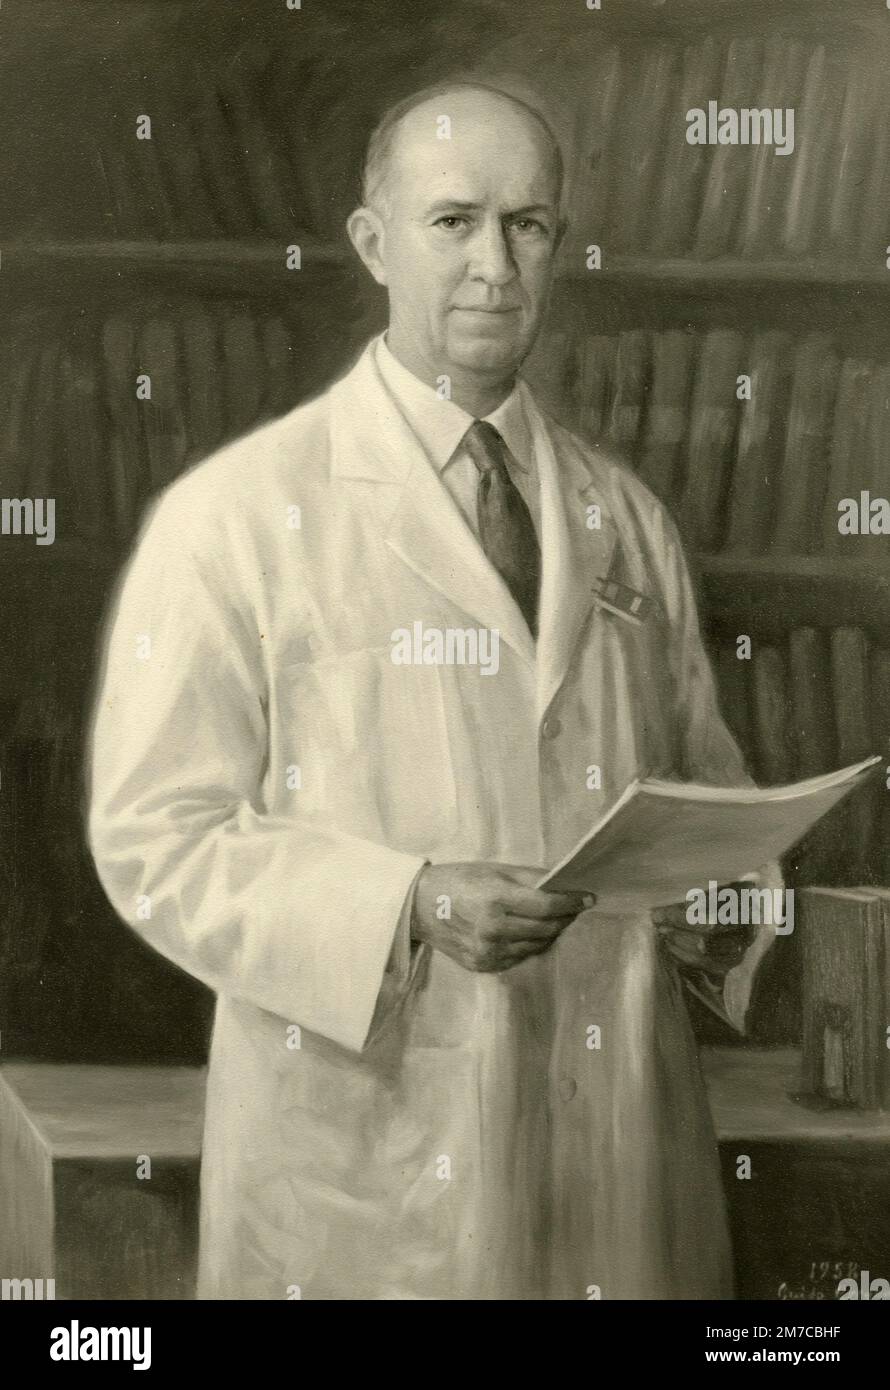 Professore americano Dottor John S. Lawrence della Berkeley University, ritratto del pittore italiano Guido Greganti, 1958 Foto Stock